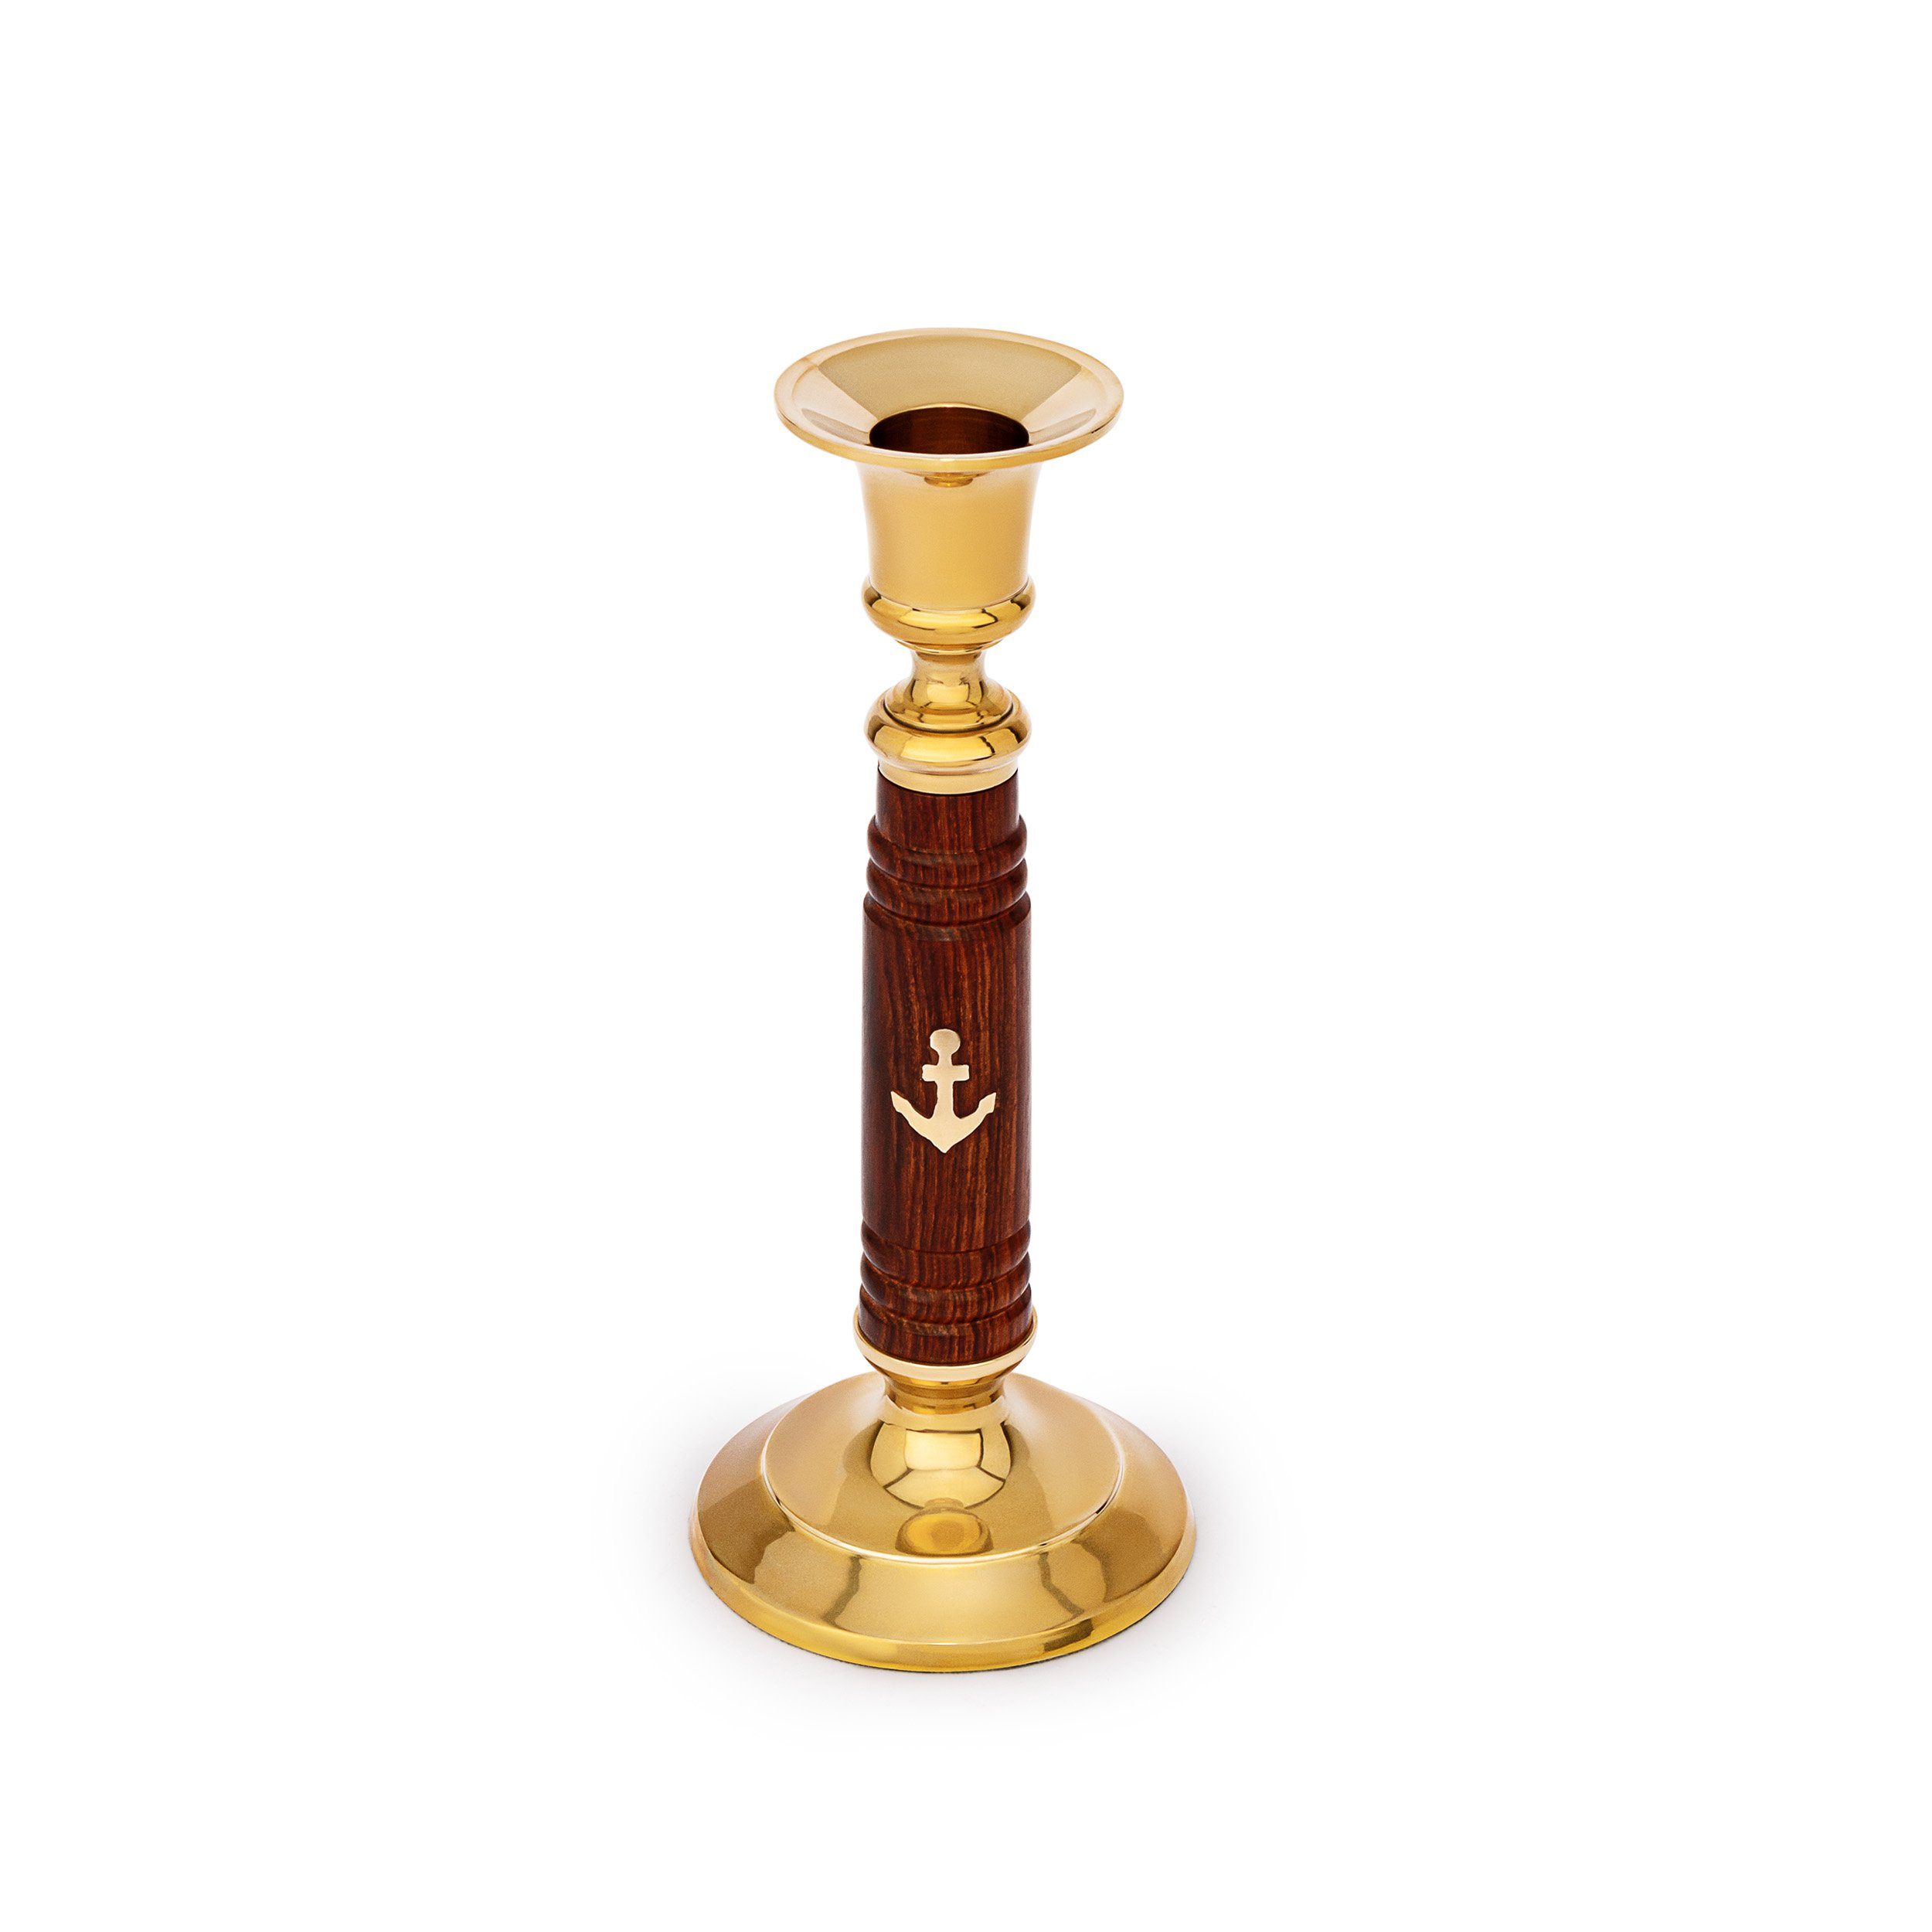 NKlaus Kerzenhalter Maritim Kerzenständer aus Holz und Messing gold 17,5cm hoch Vintage Ke (Kerzenhalter)